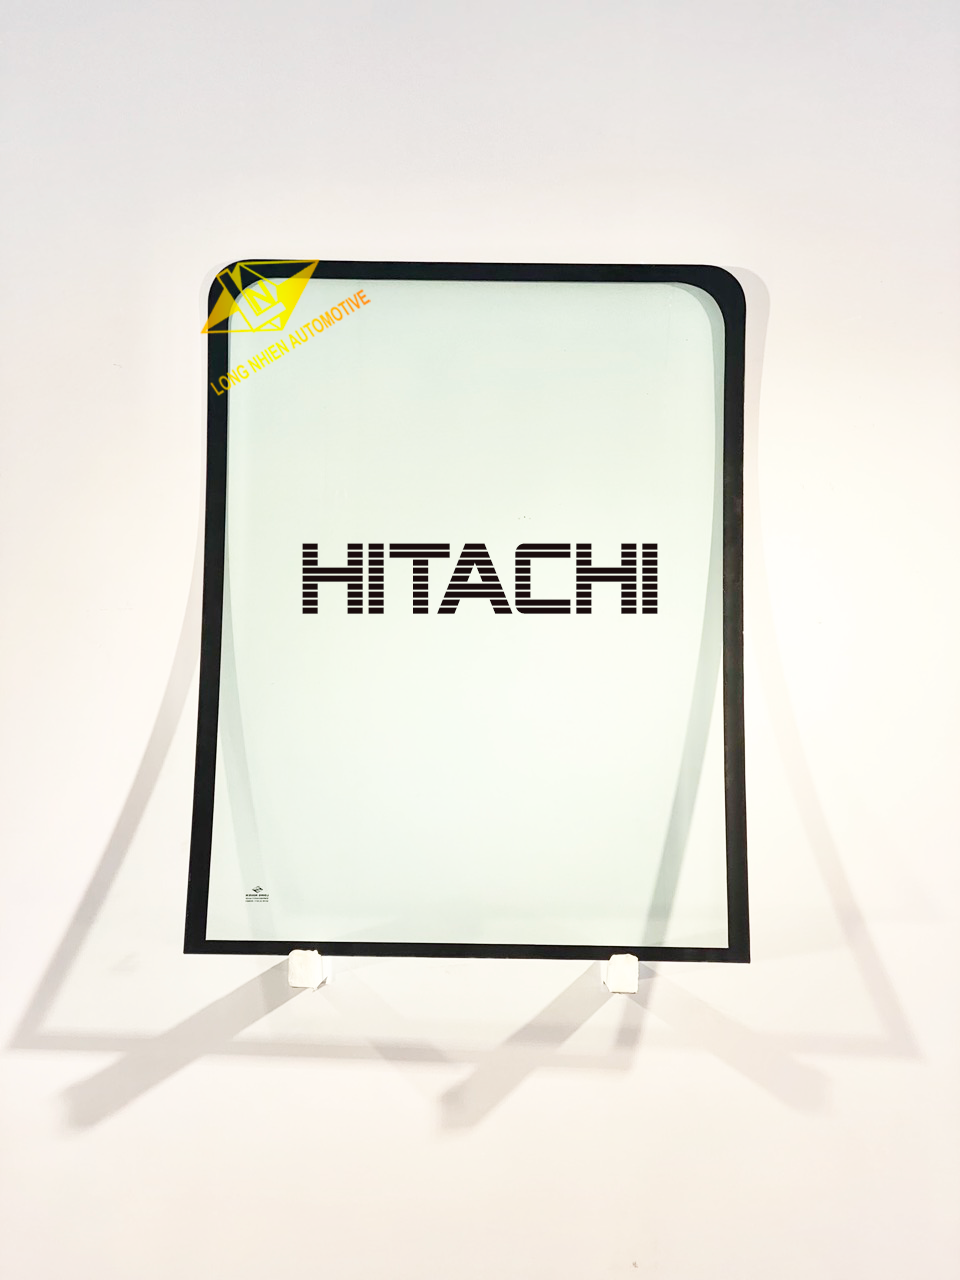 Hitachi Kính xe cuốc (1067x830)